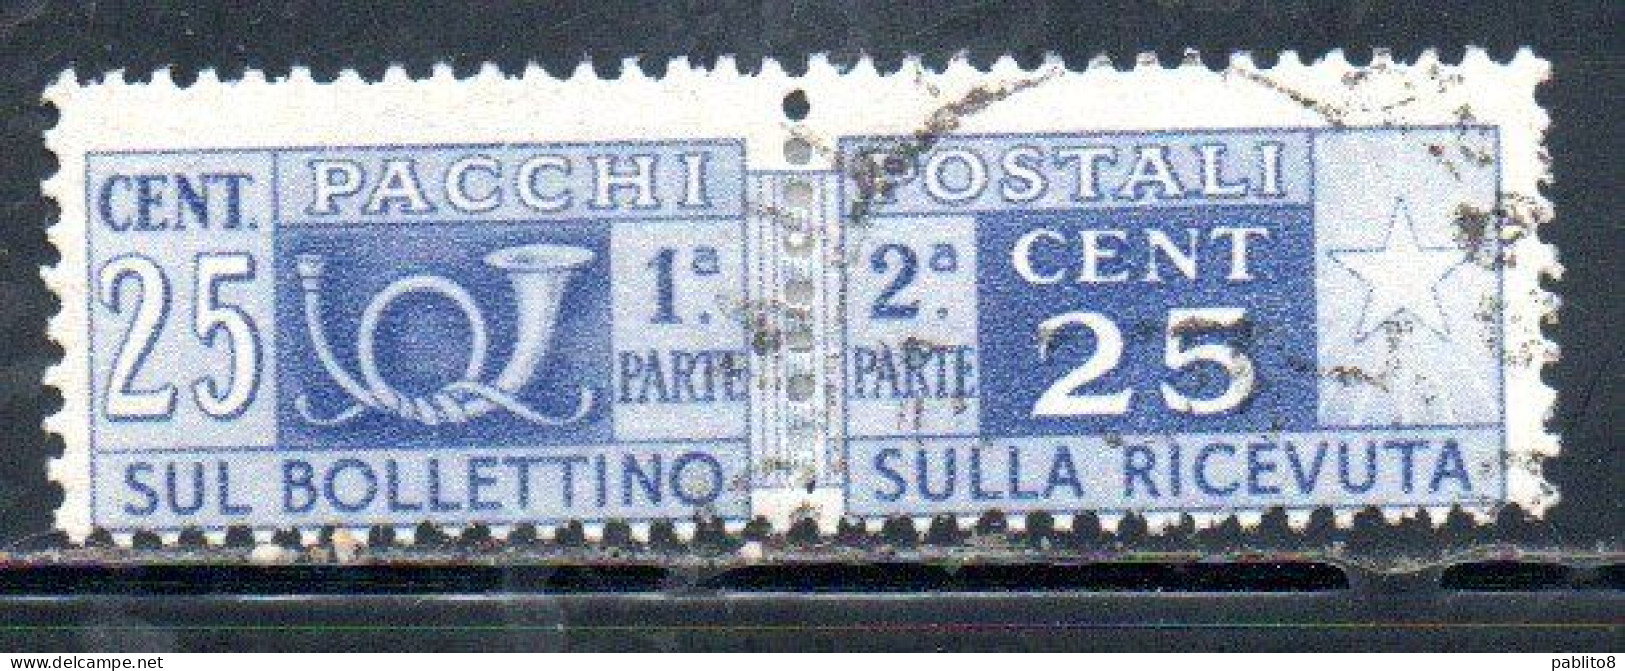 ITALIA REPUBBLICA ITALY REPUBLIC 1946 1951 PACCHI POSTALI PARCEL POST RUOTA WHEEL 1947 CENT. 25c USATO USED OBLITERE' - Pacchi Postali